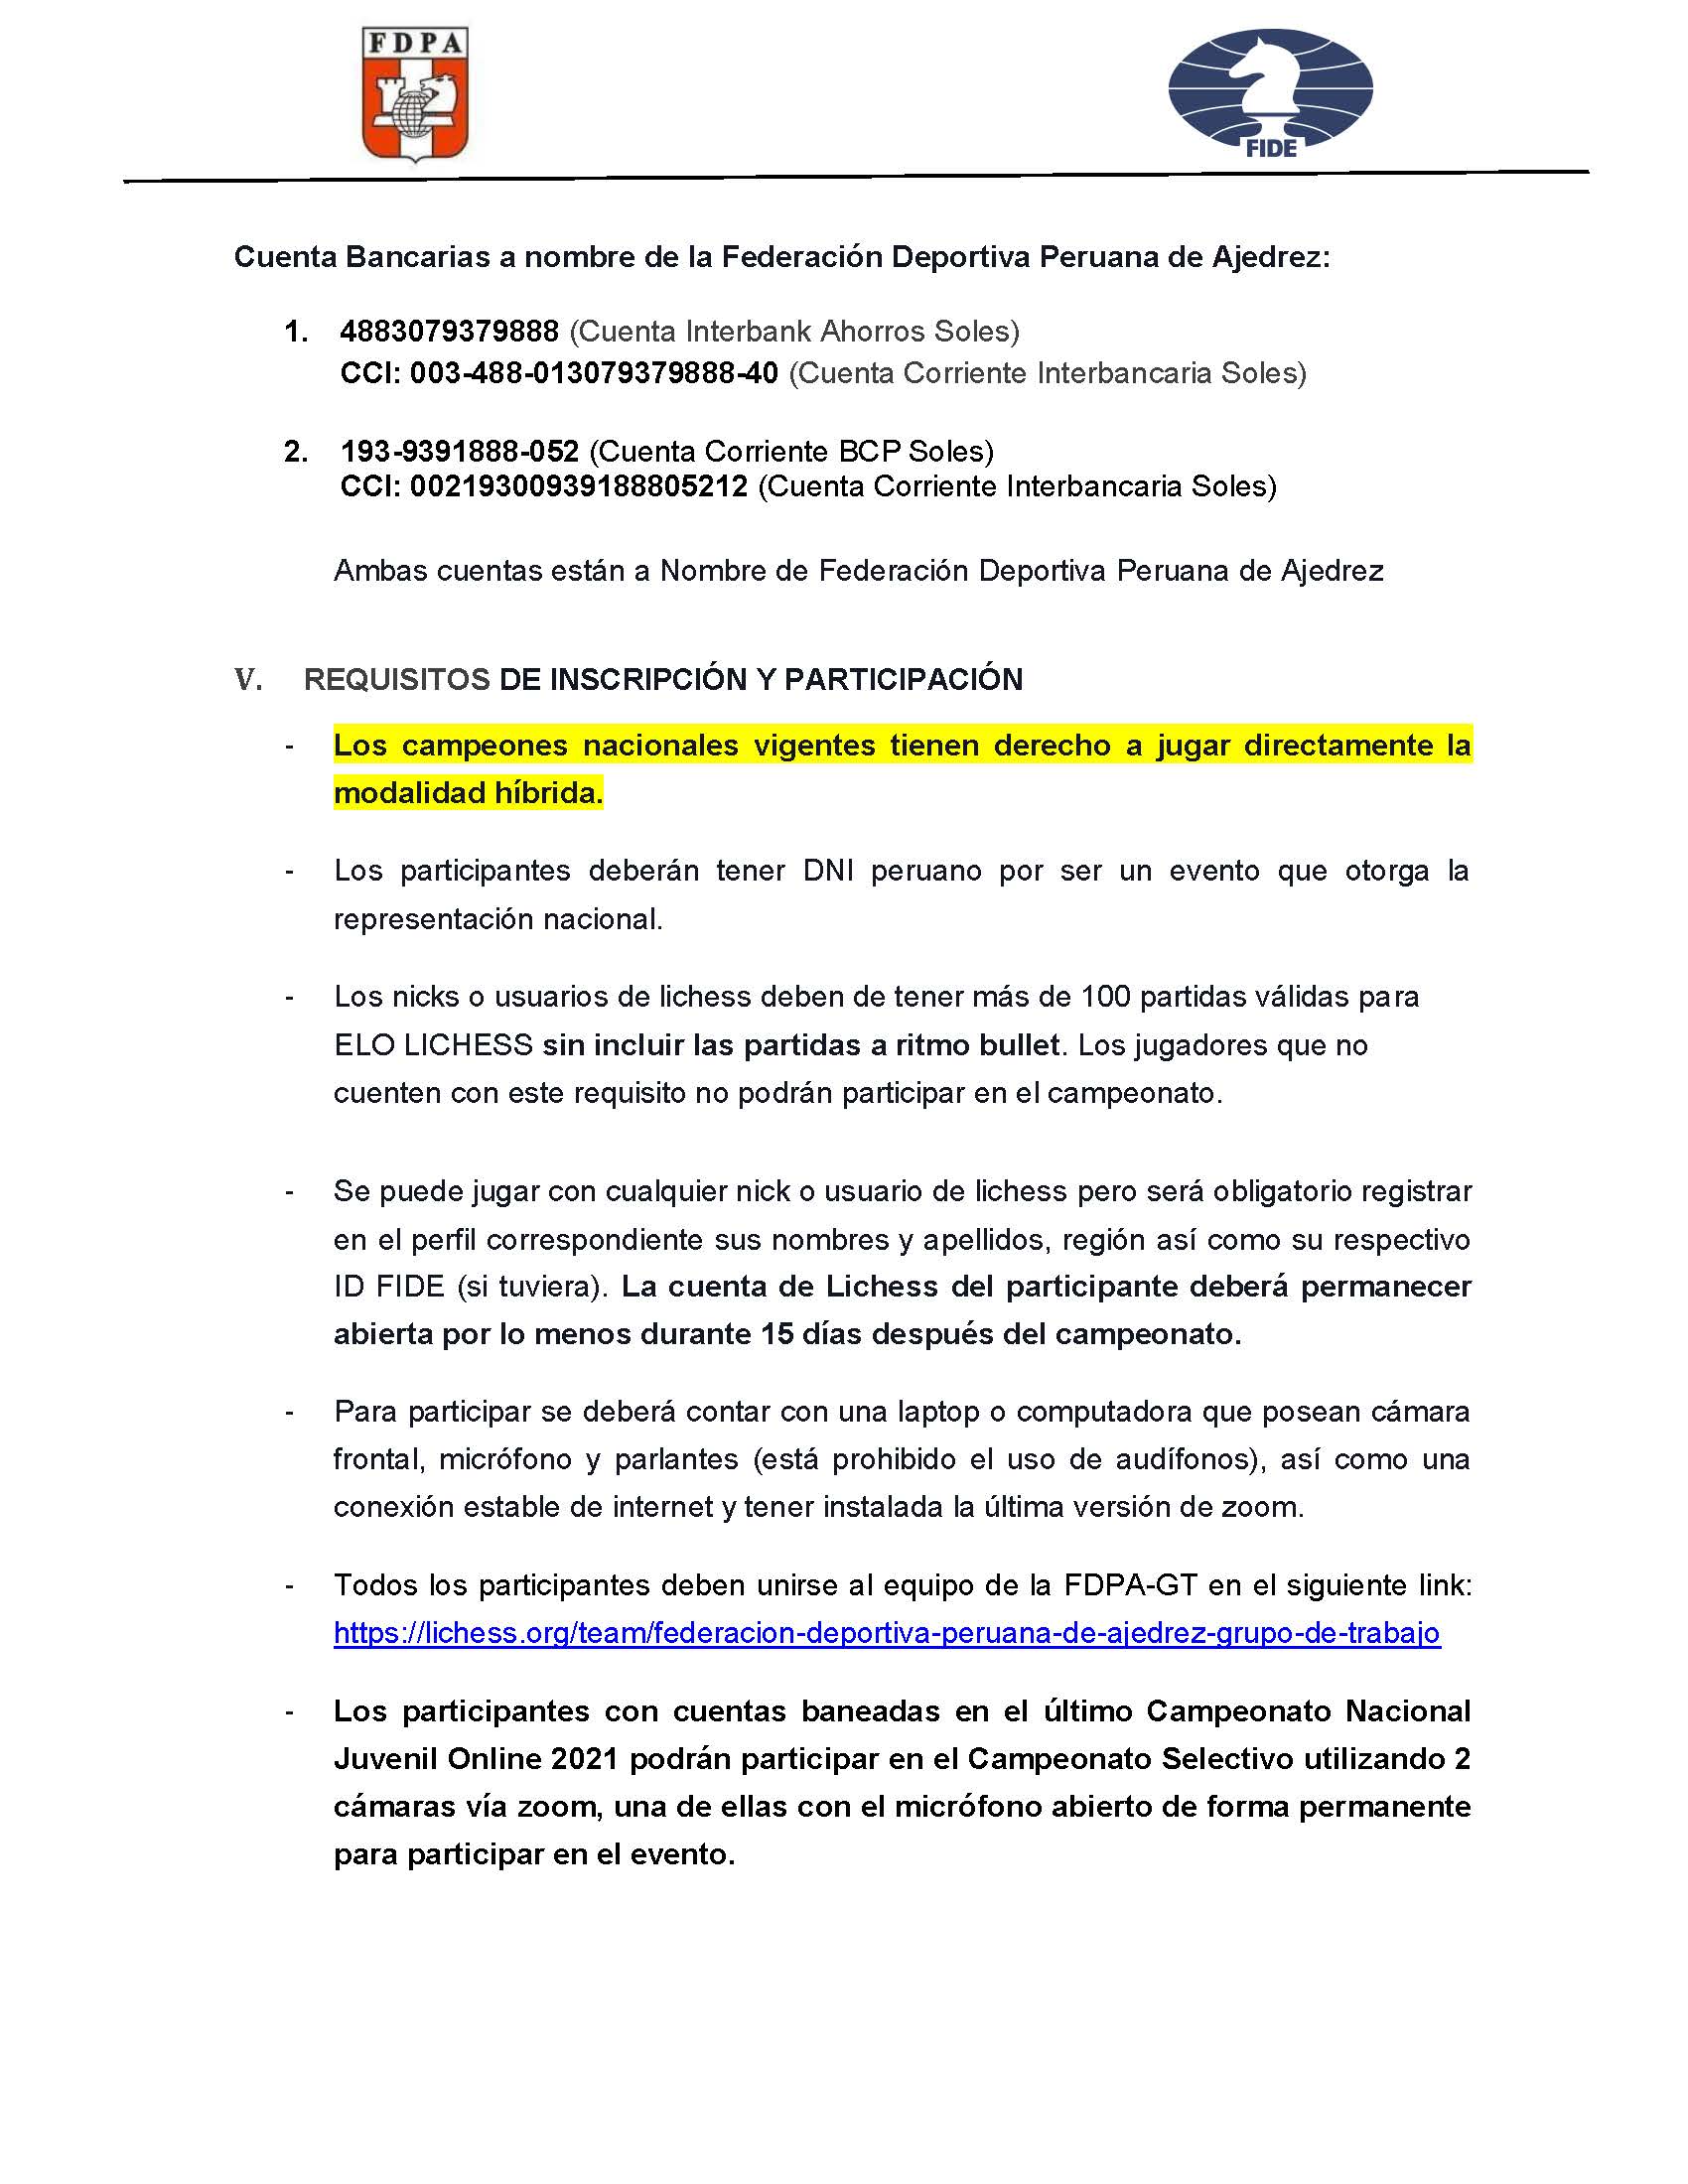 BASES_ACTUALIZADAS_SELECTIVO_PANAMERICANO_JUVENTUD_2021_Página_2.jpg